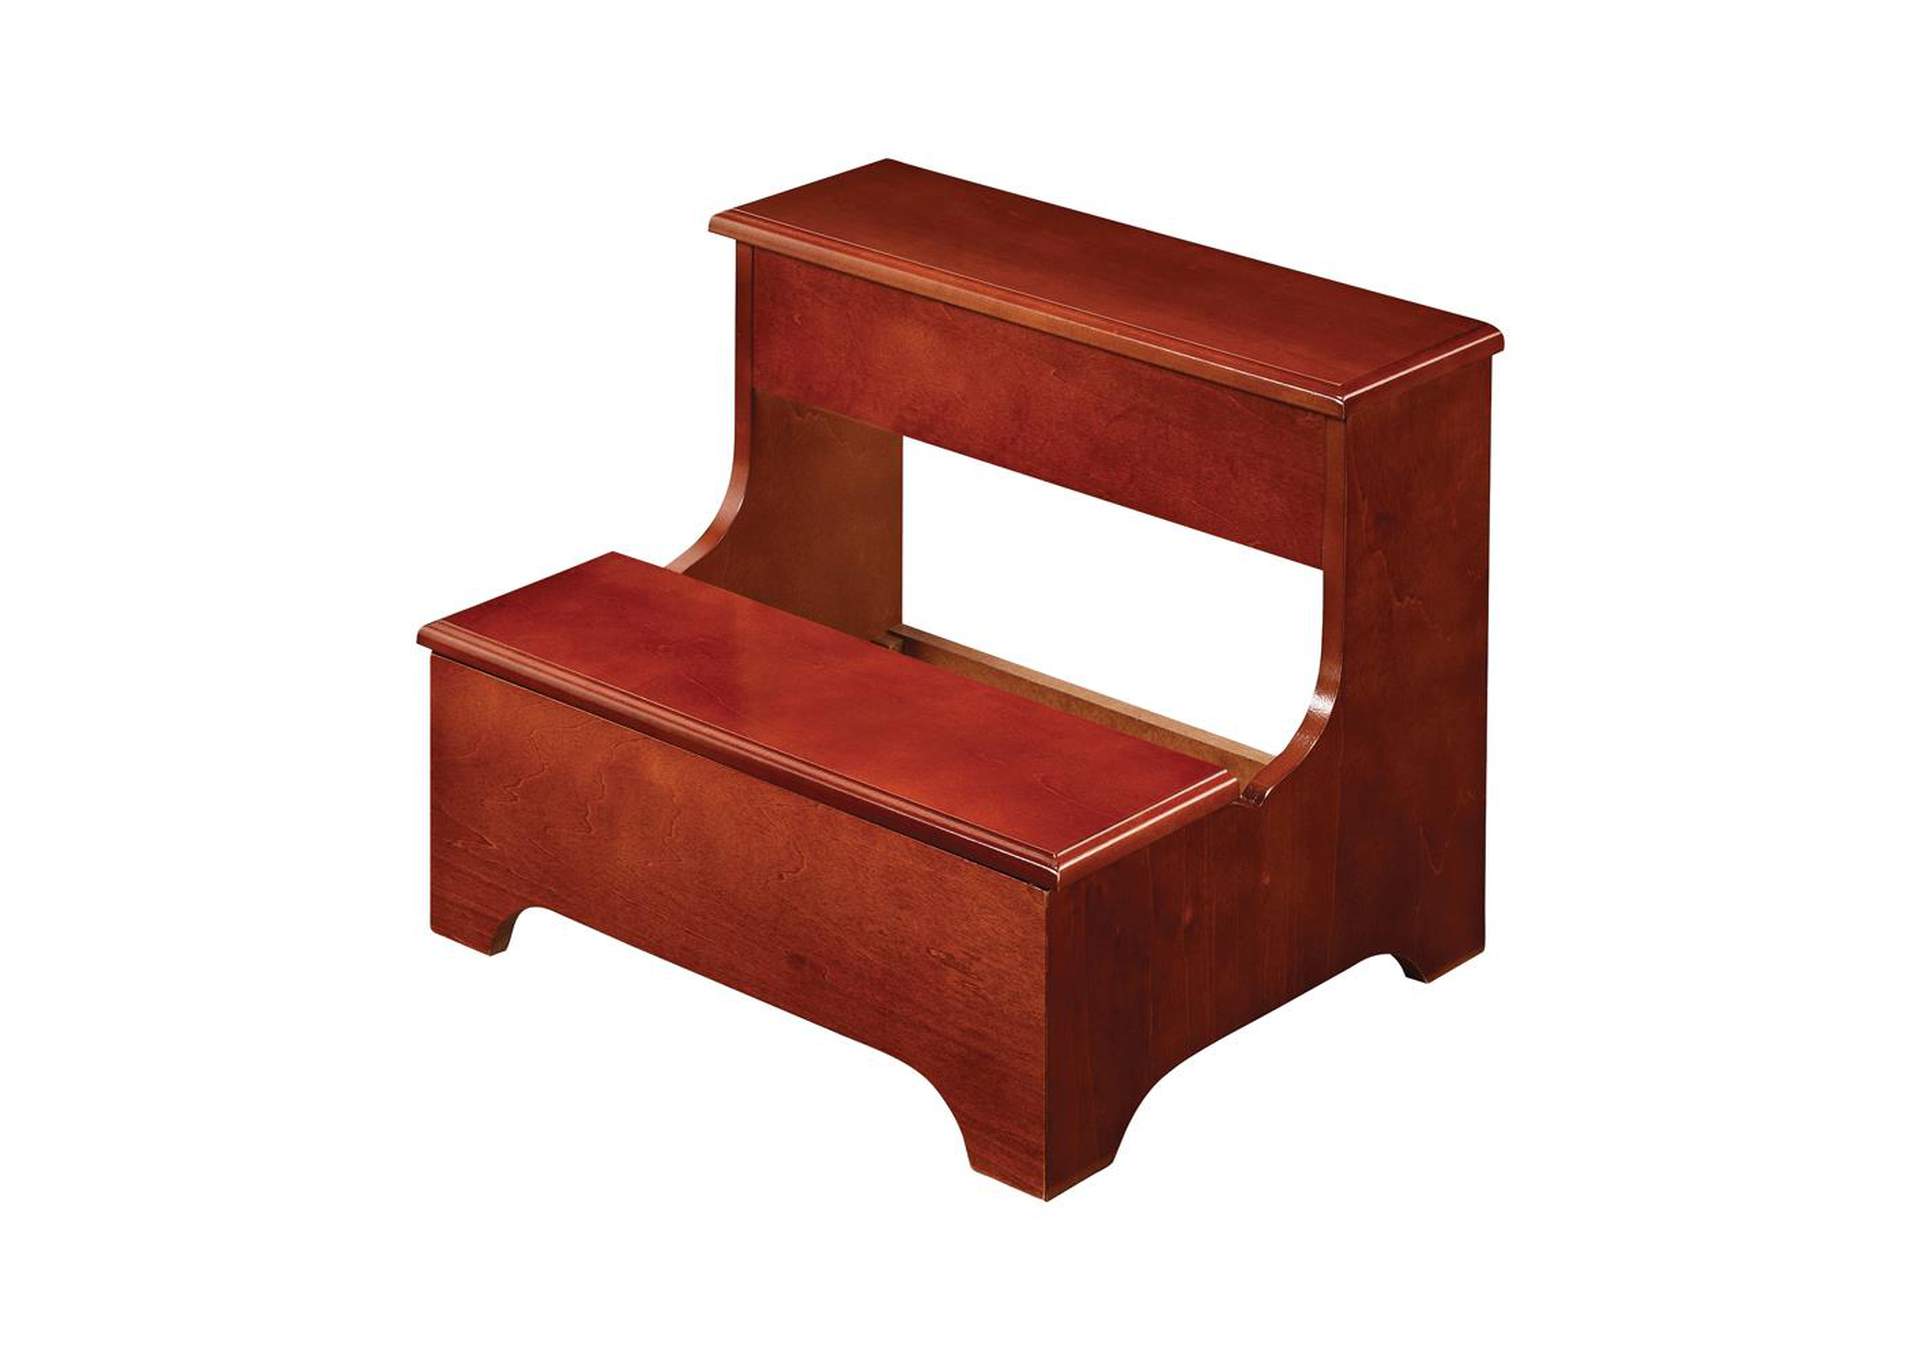 2-Tier Step Stool With Hidden Storage Warm Brown,Coaster Furniture